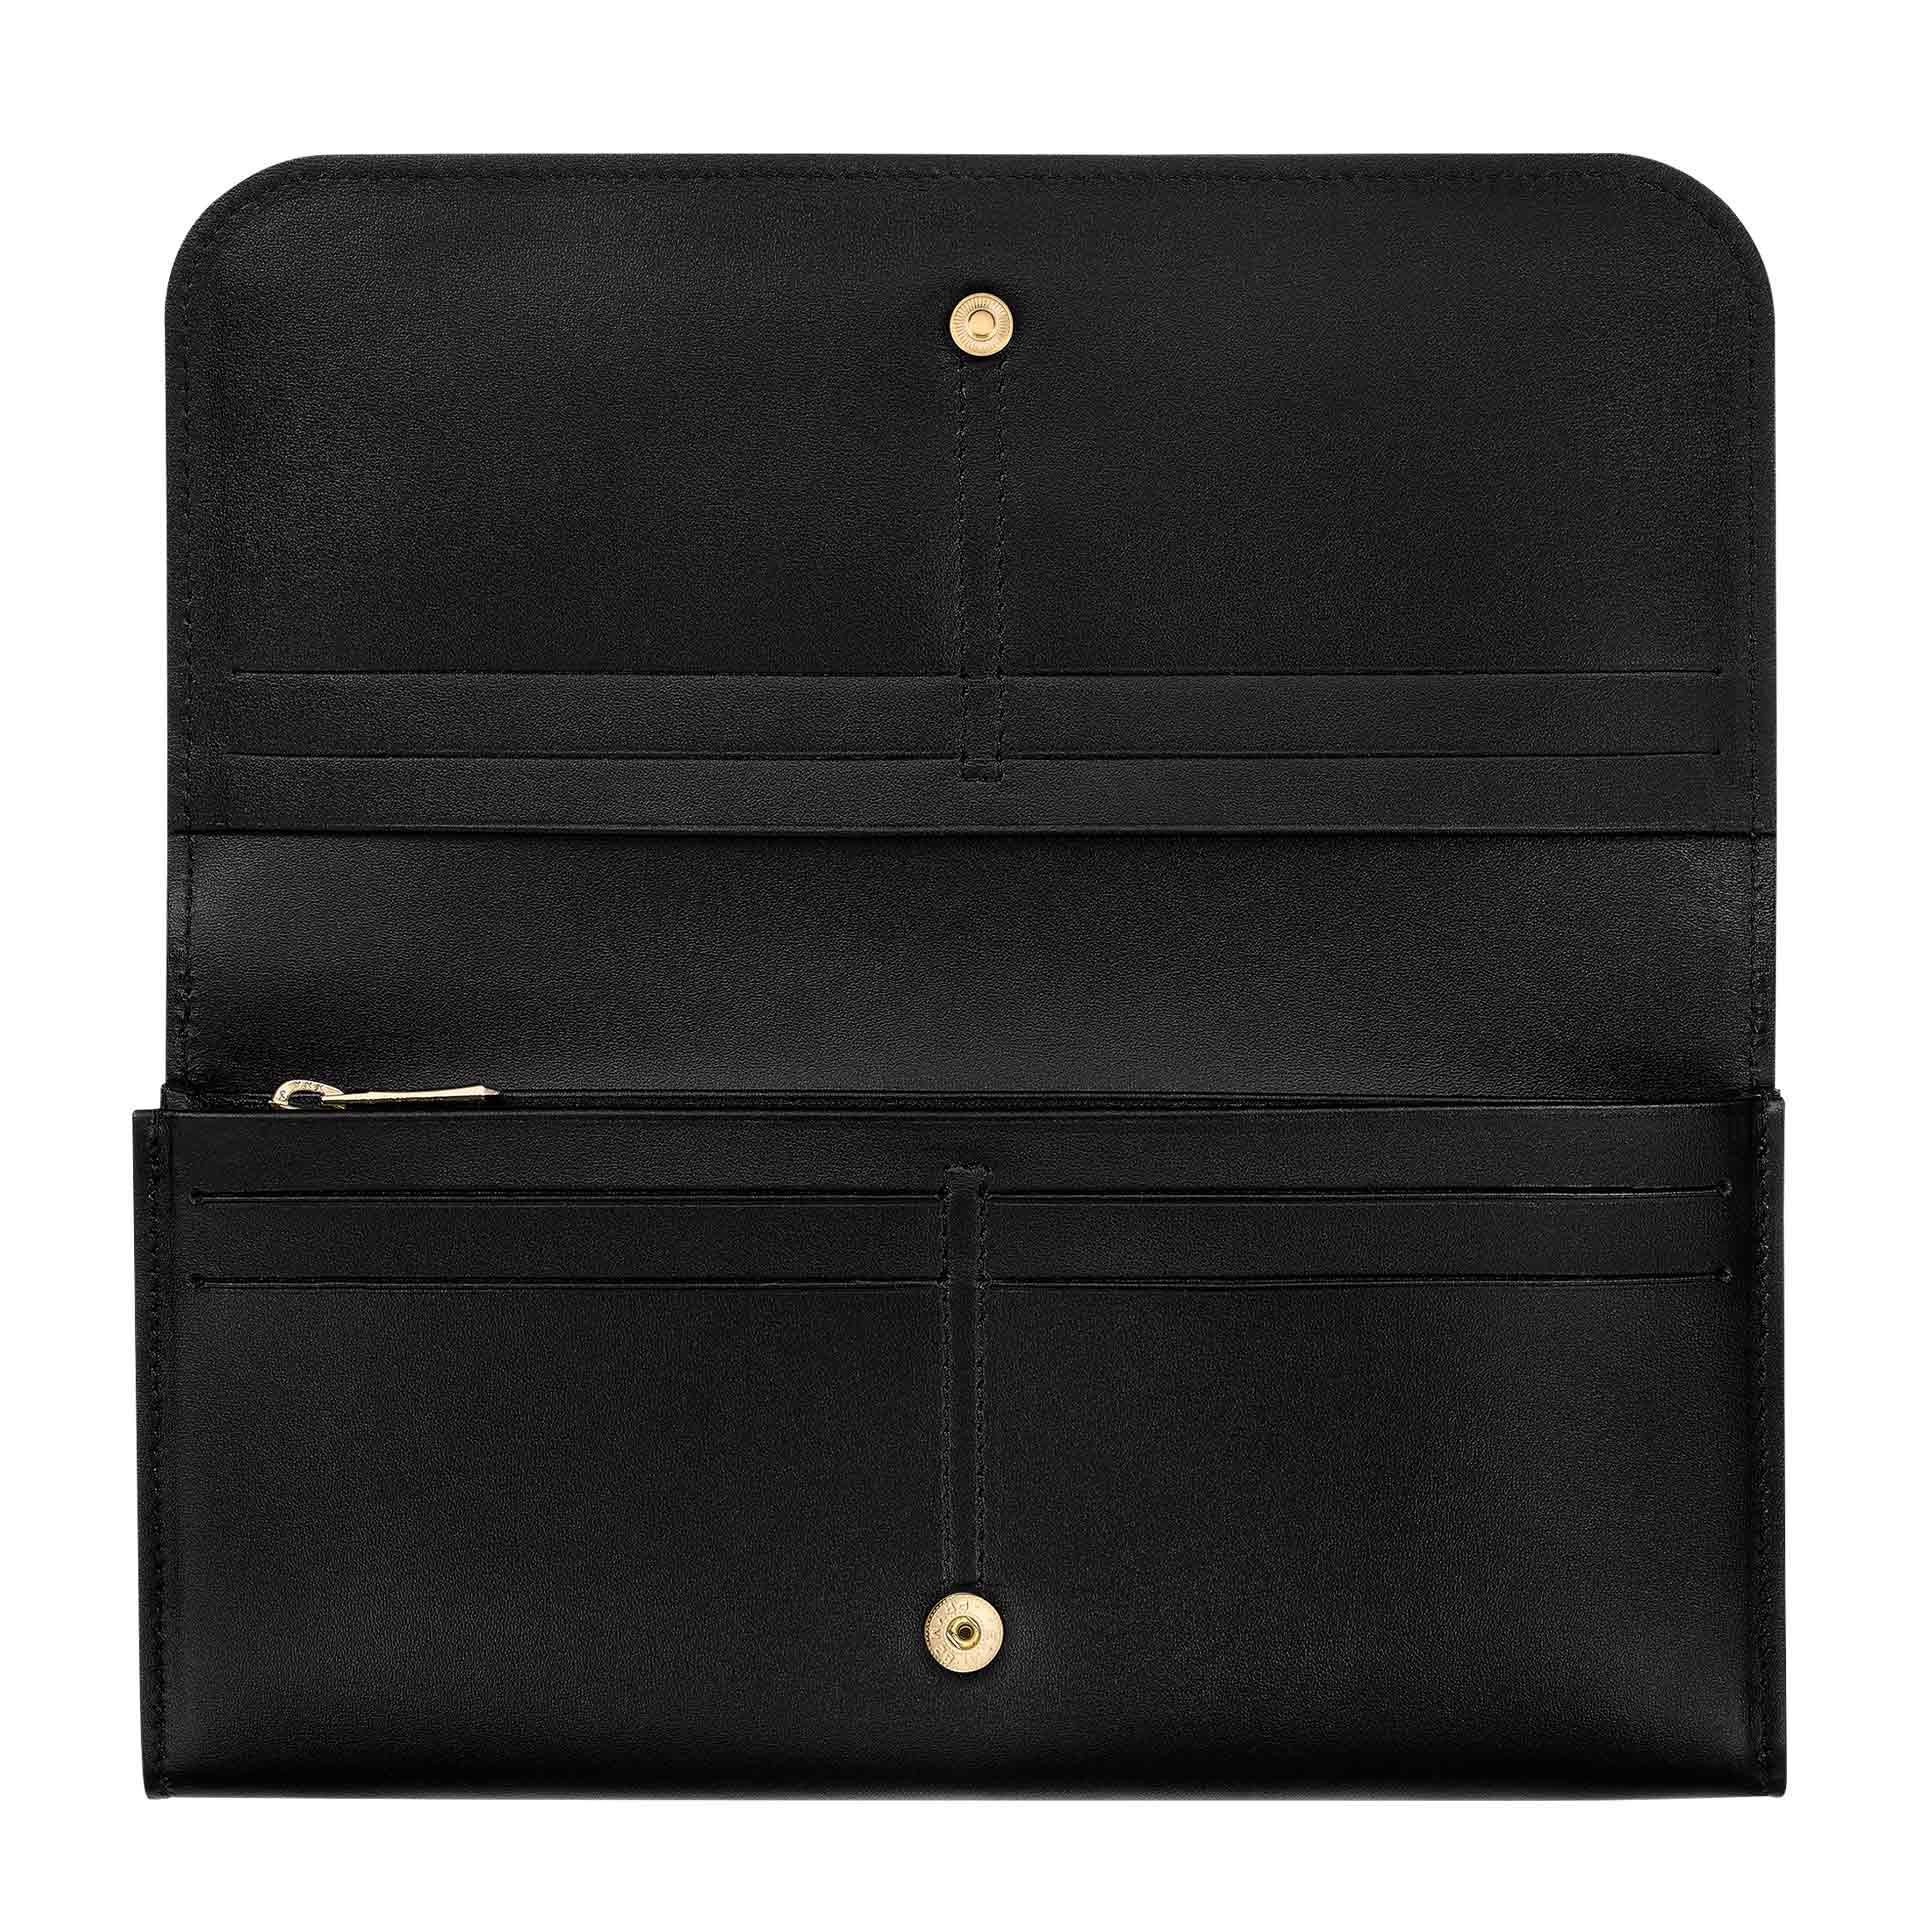 Longchamp Box-Trot Lange Damen Geldbörse mit Überschlag black